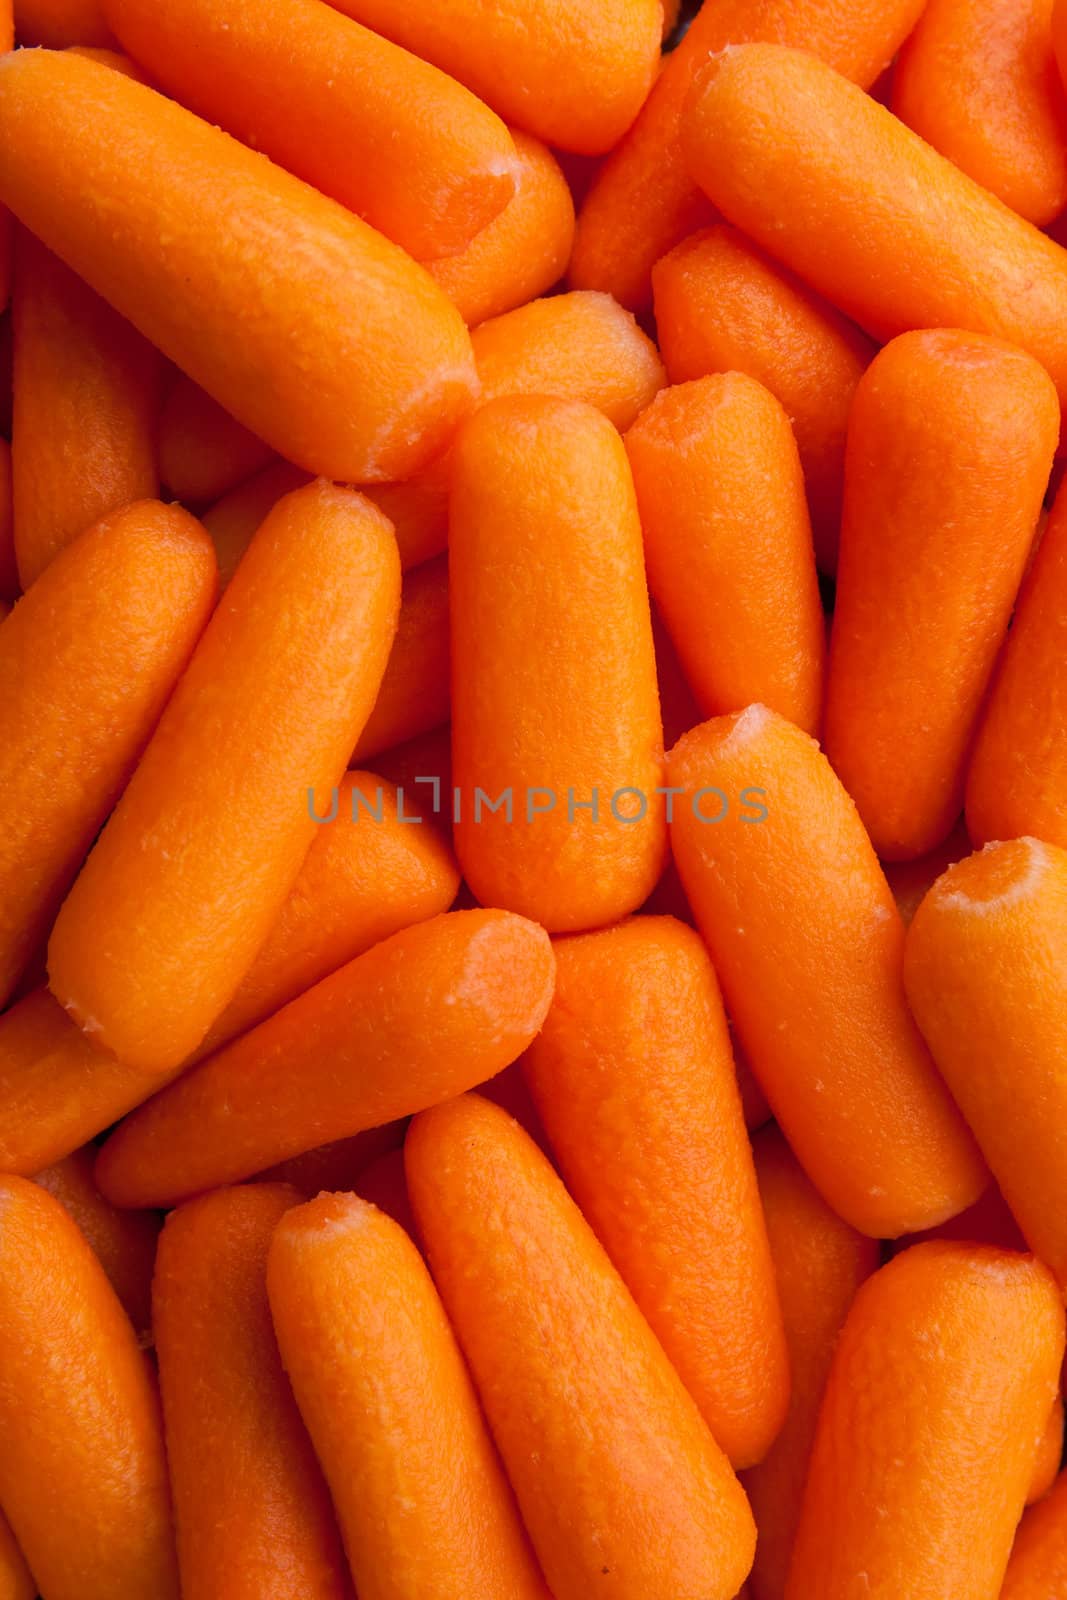 Baby Carrots by raliand